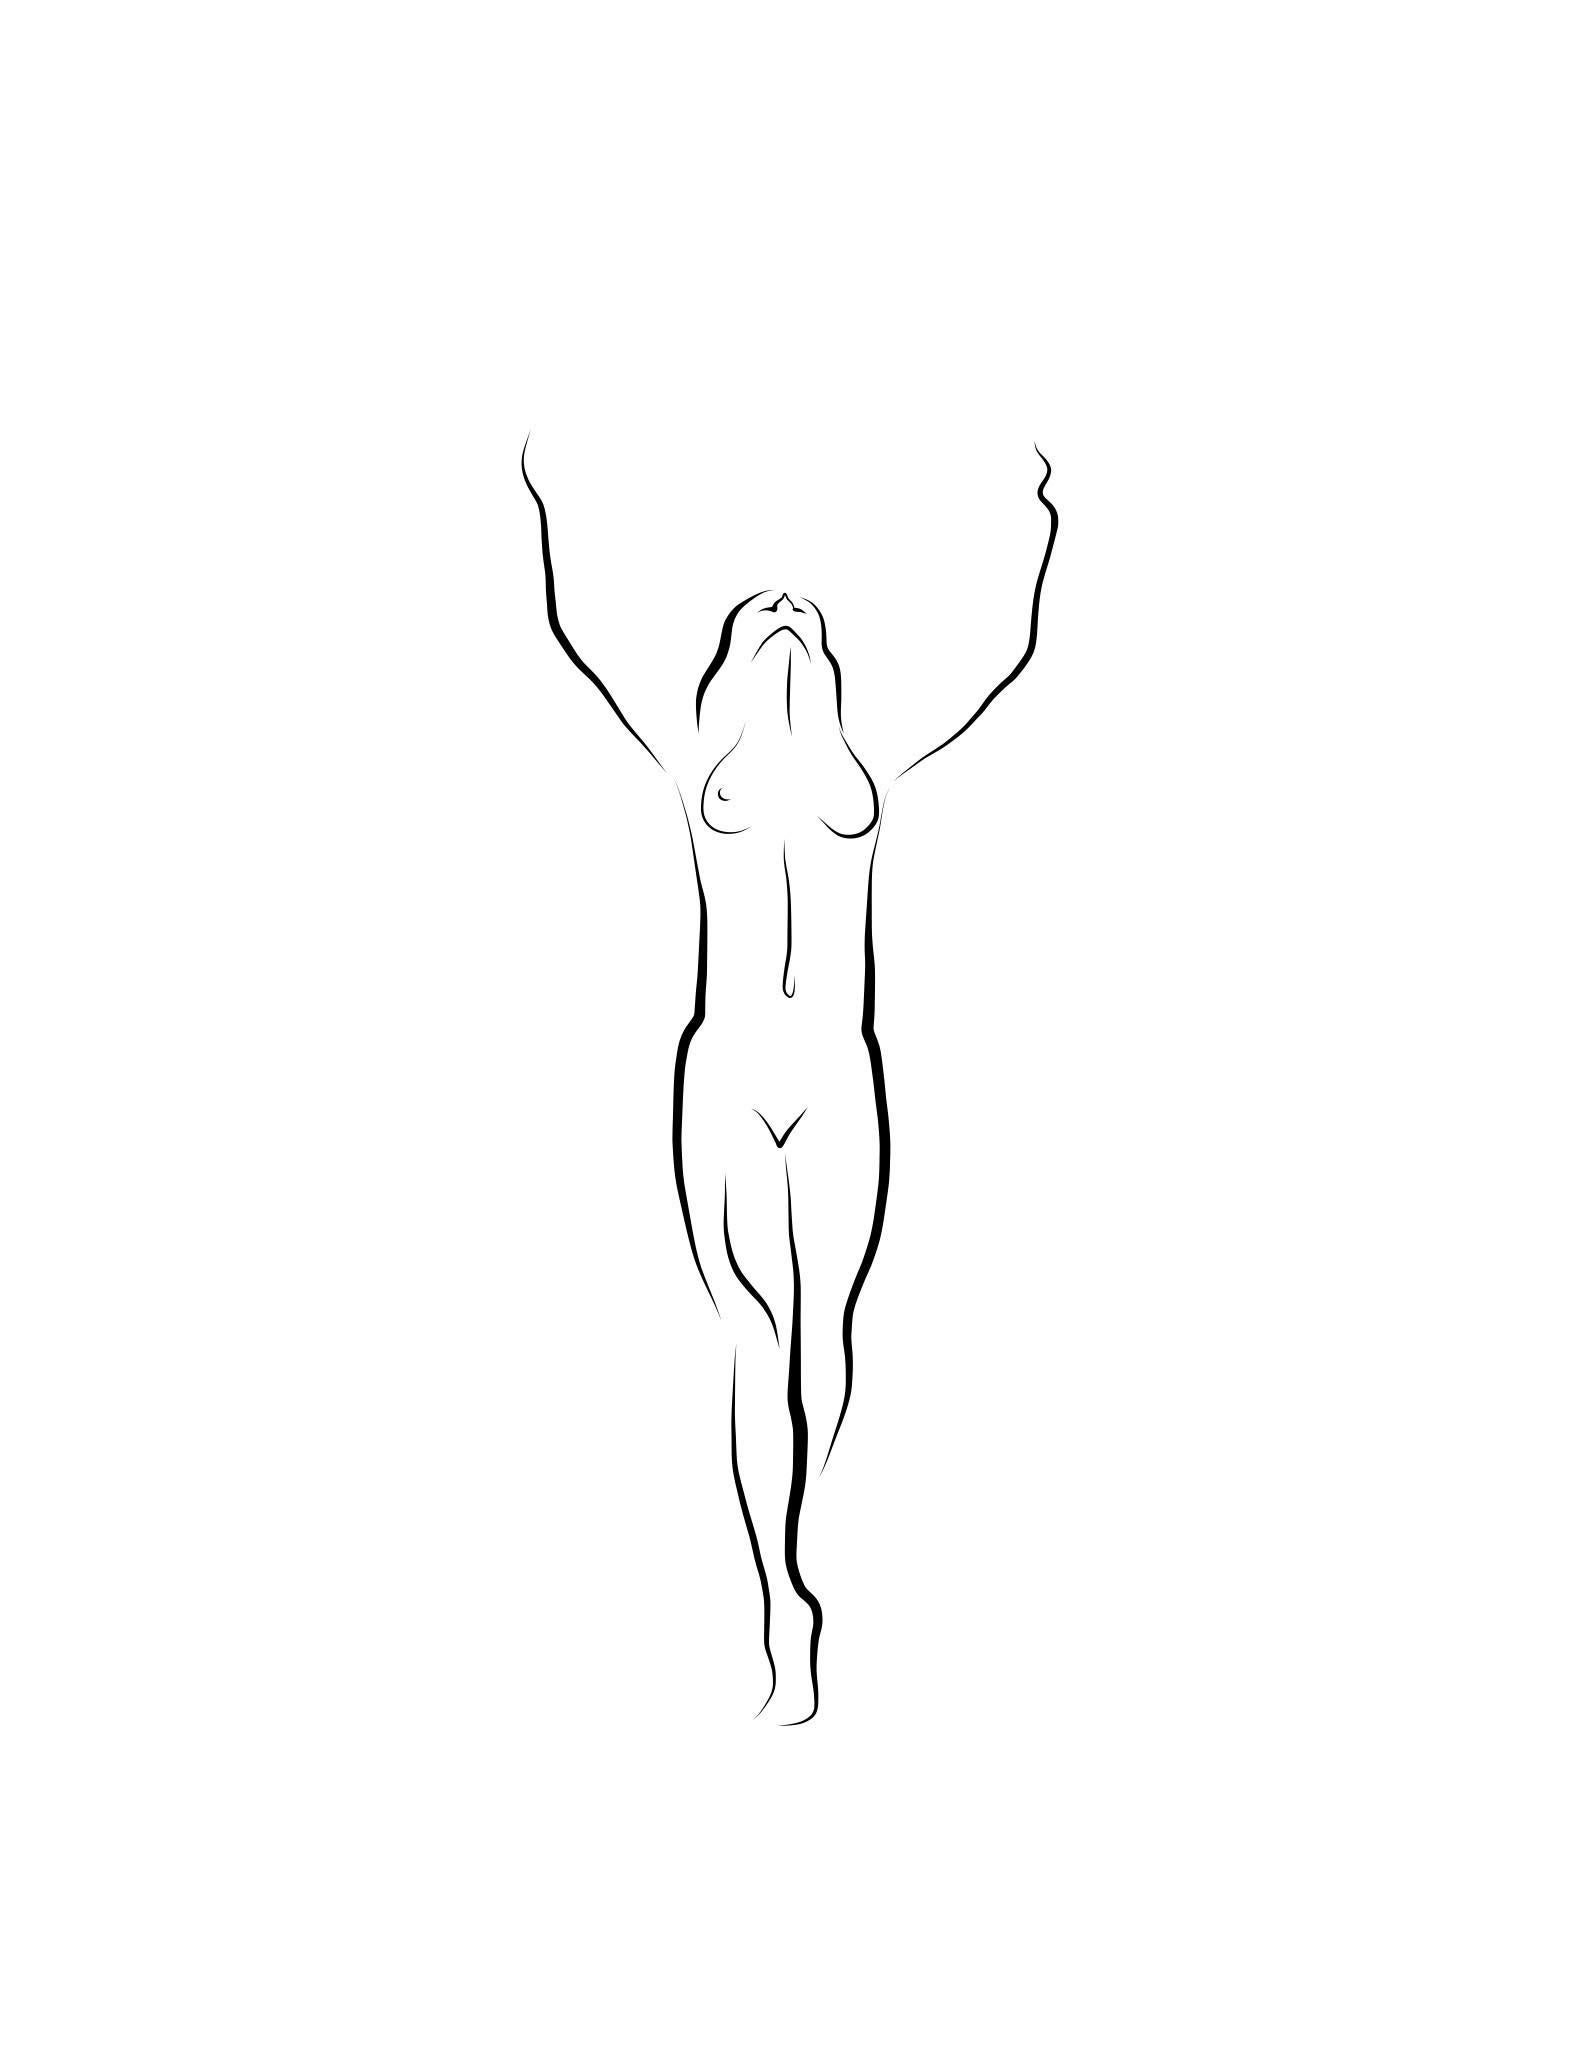 Haiku n°48, 1/ 50 - Dessin numérique représentant une femme nue debout